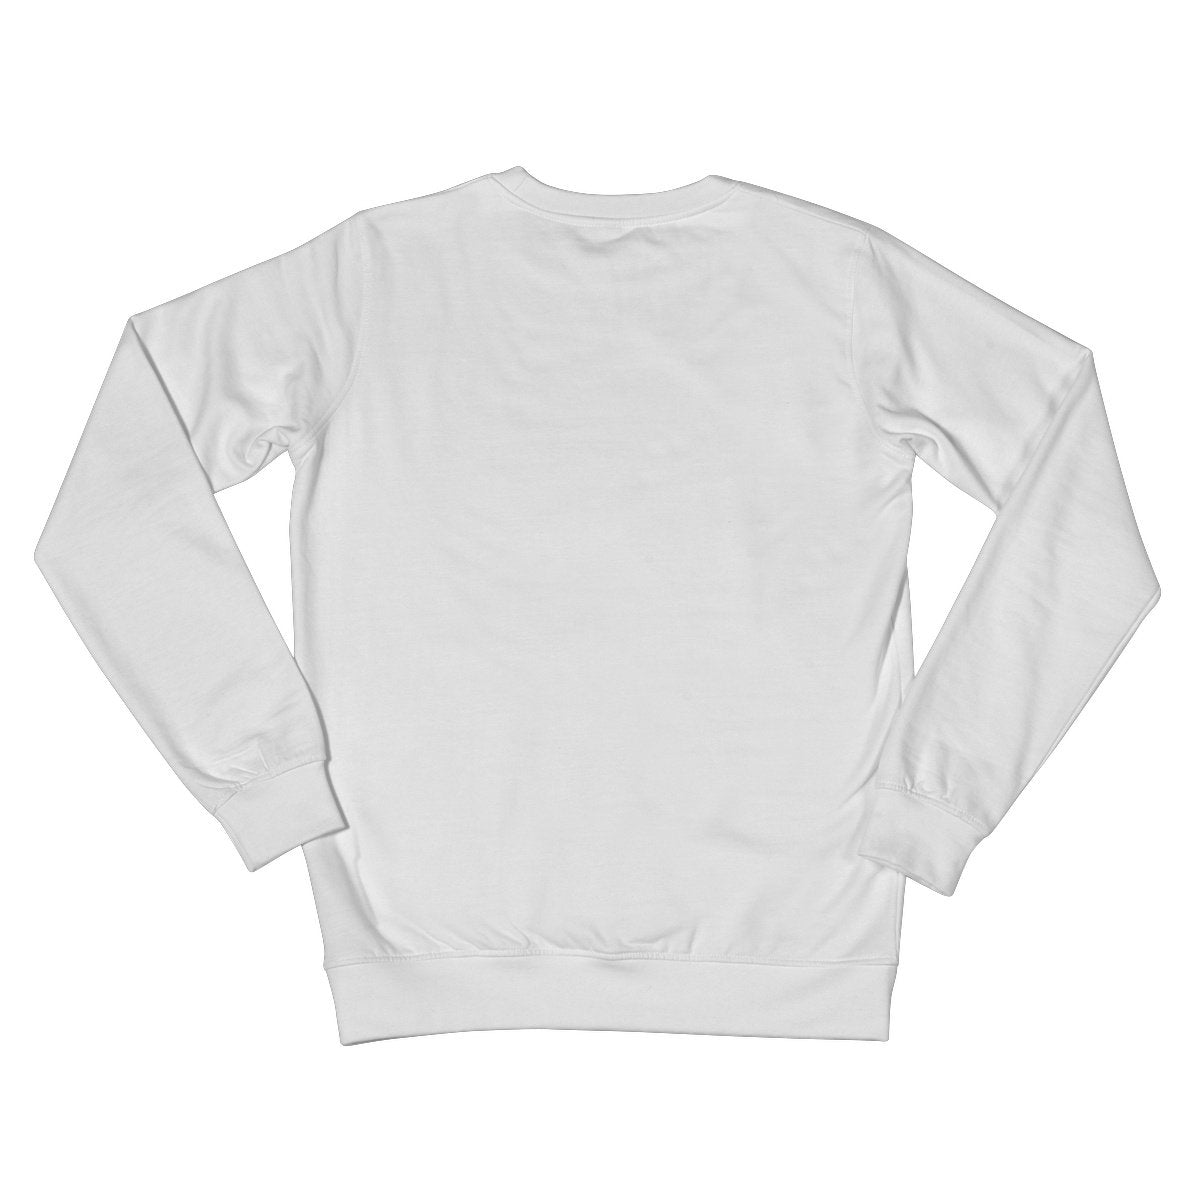 Crew Neck Sweatshirt - 'Cool Cat'